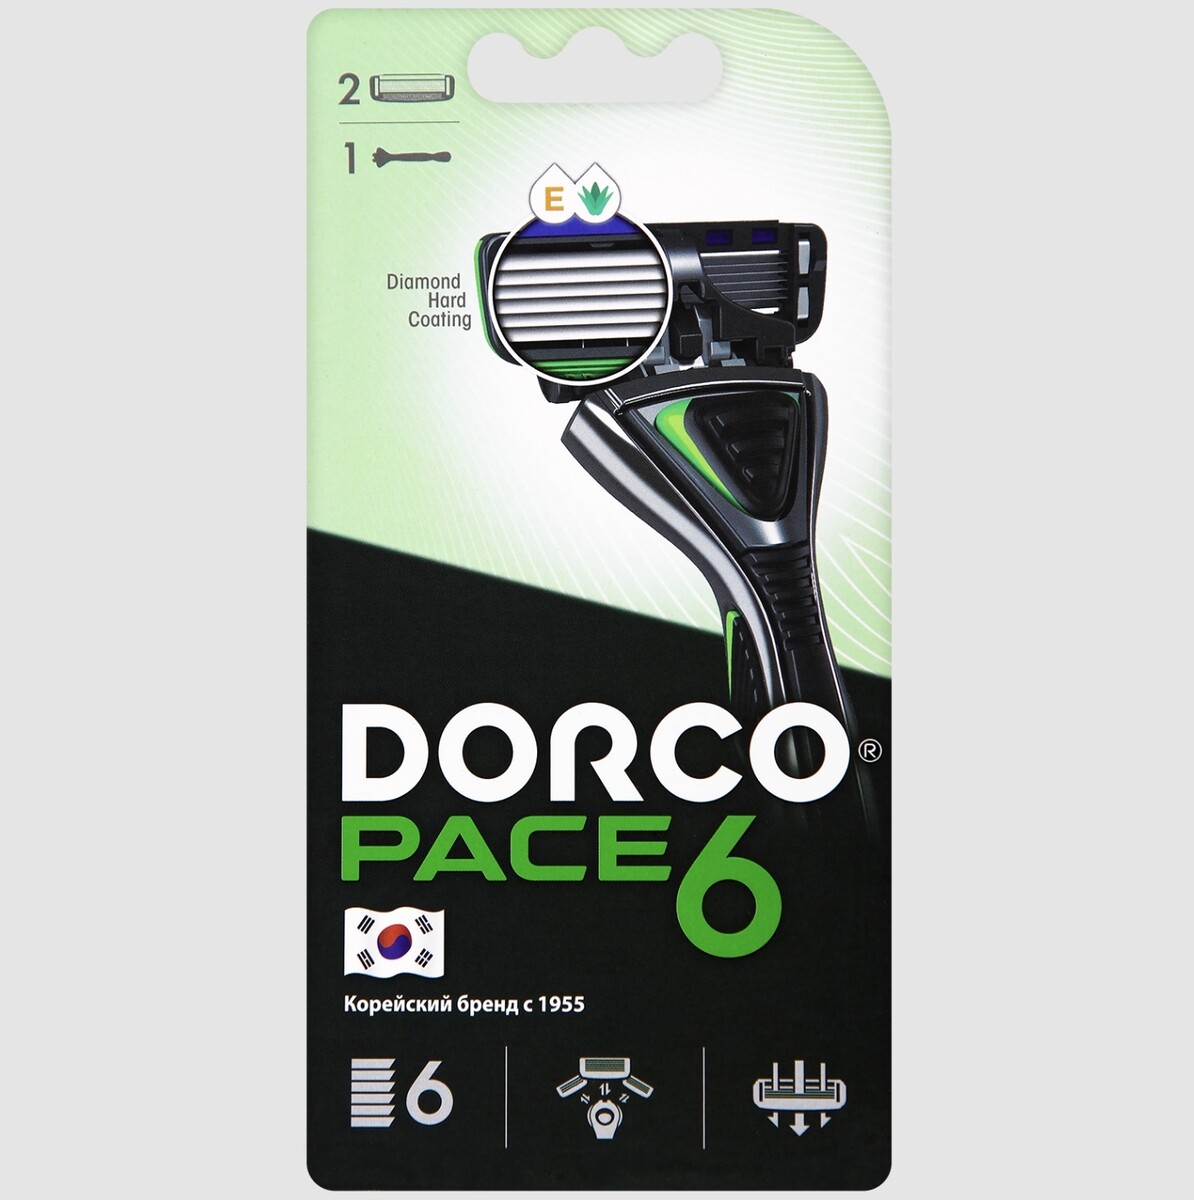 Dorco pace6 (станок+2's) система с 6лезвиями (ю.корея) станок для бритья одноразовый dorco pace 4 4 лезвия увлажняющая полоска плавающая головка